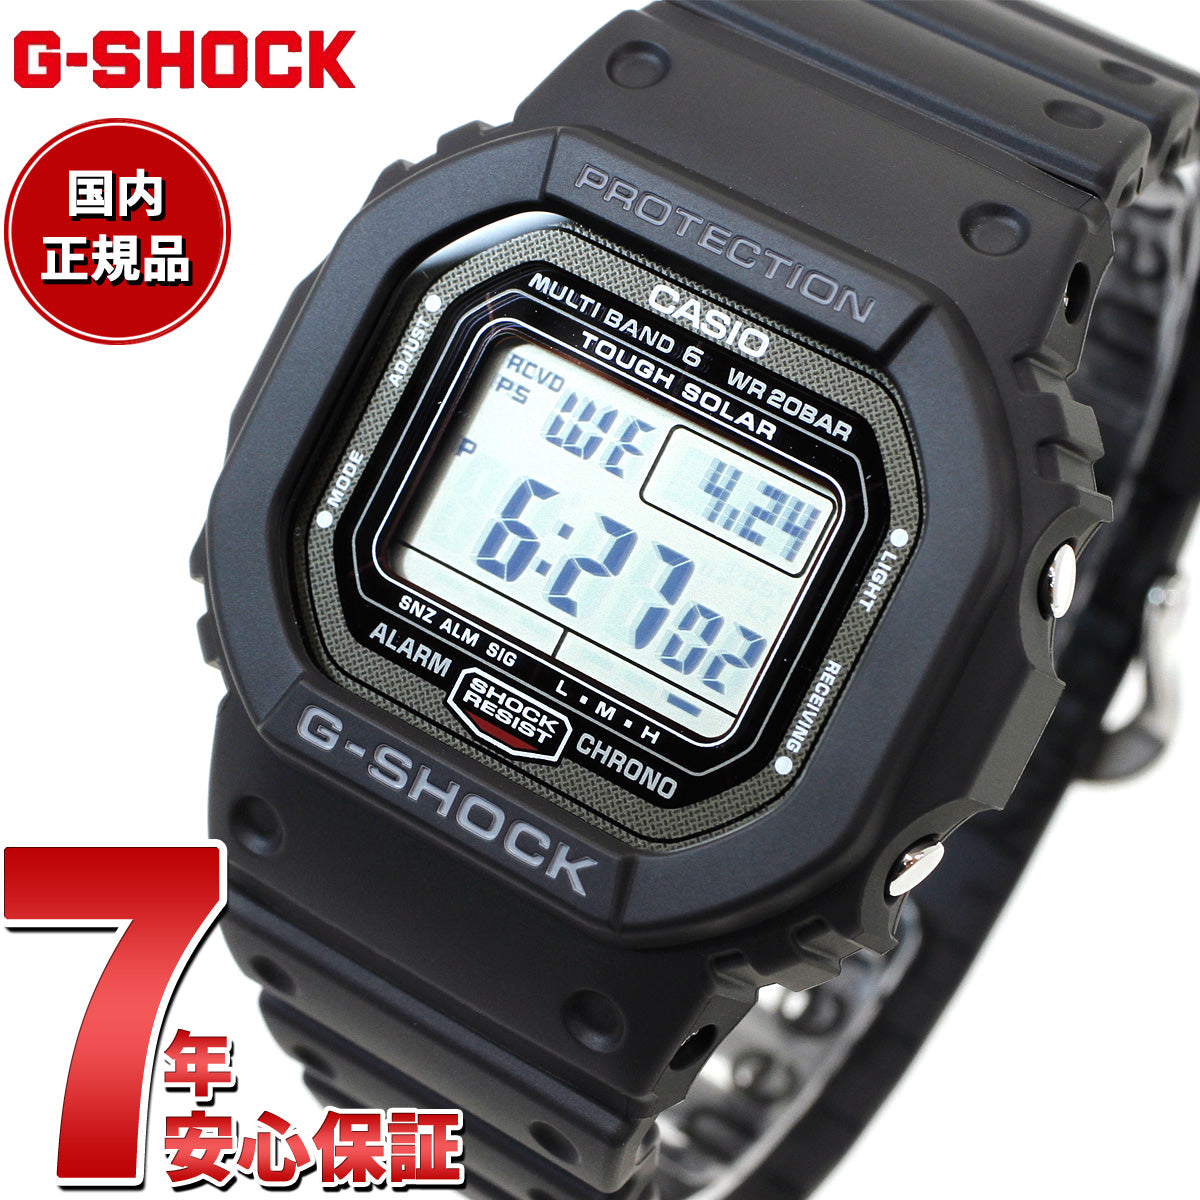 LEDバックライト付きG-SHOCK Gショック デジタル腕時計 GW-5000U-1JF ブラック